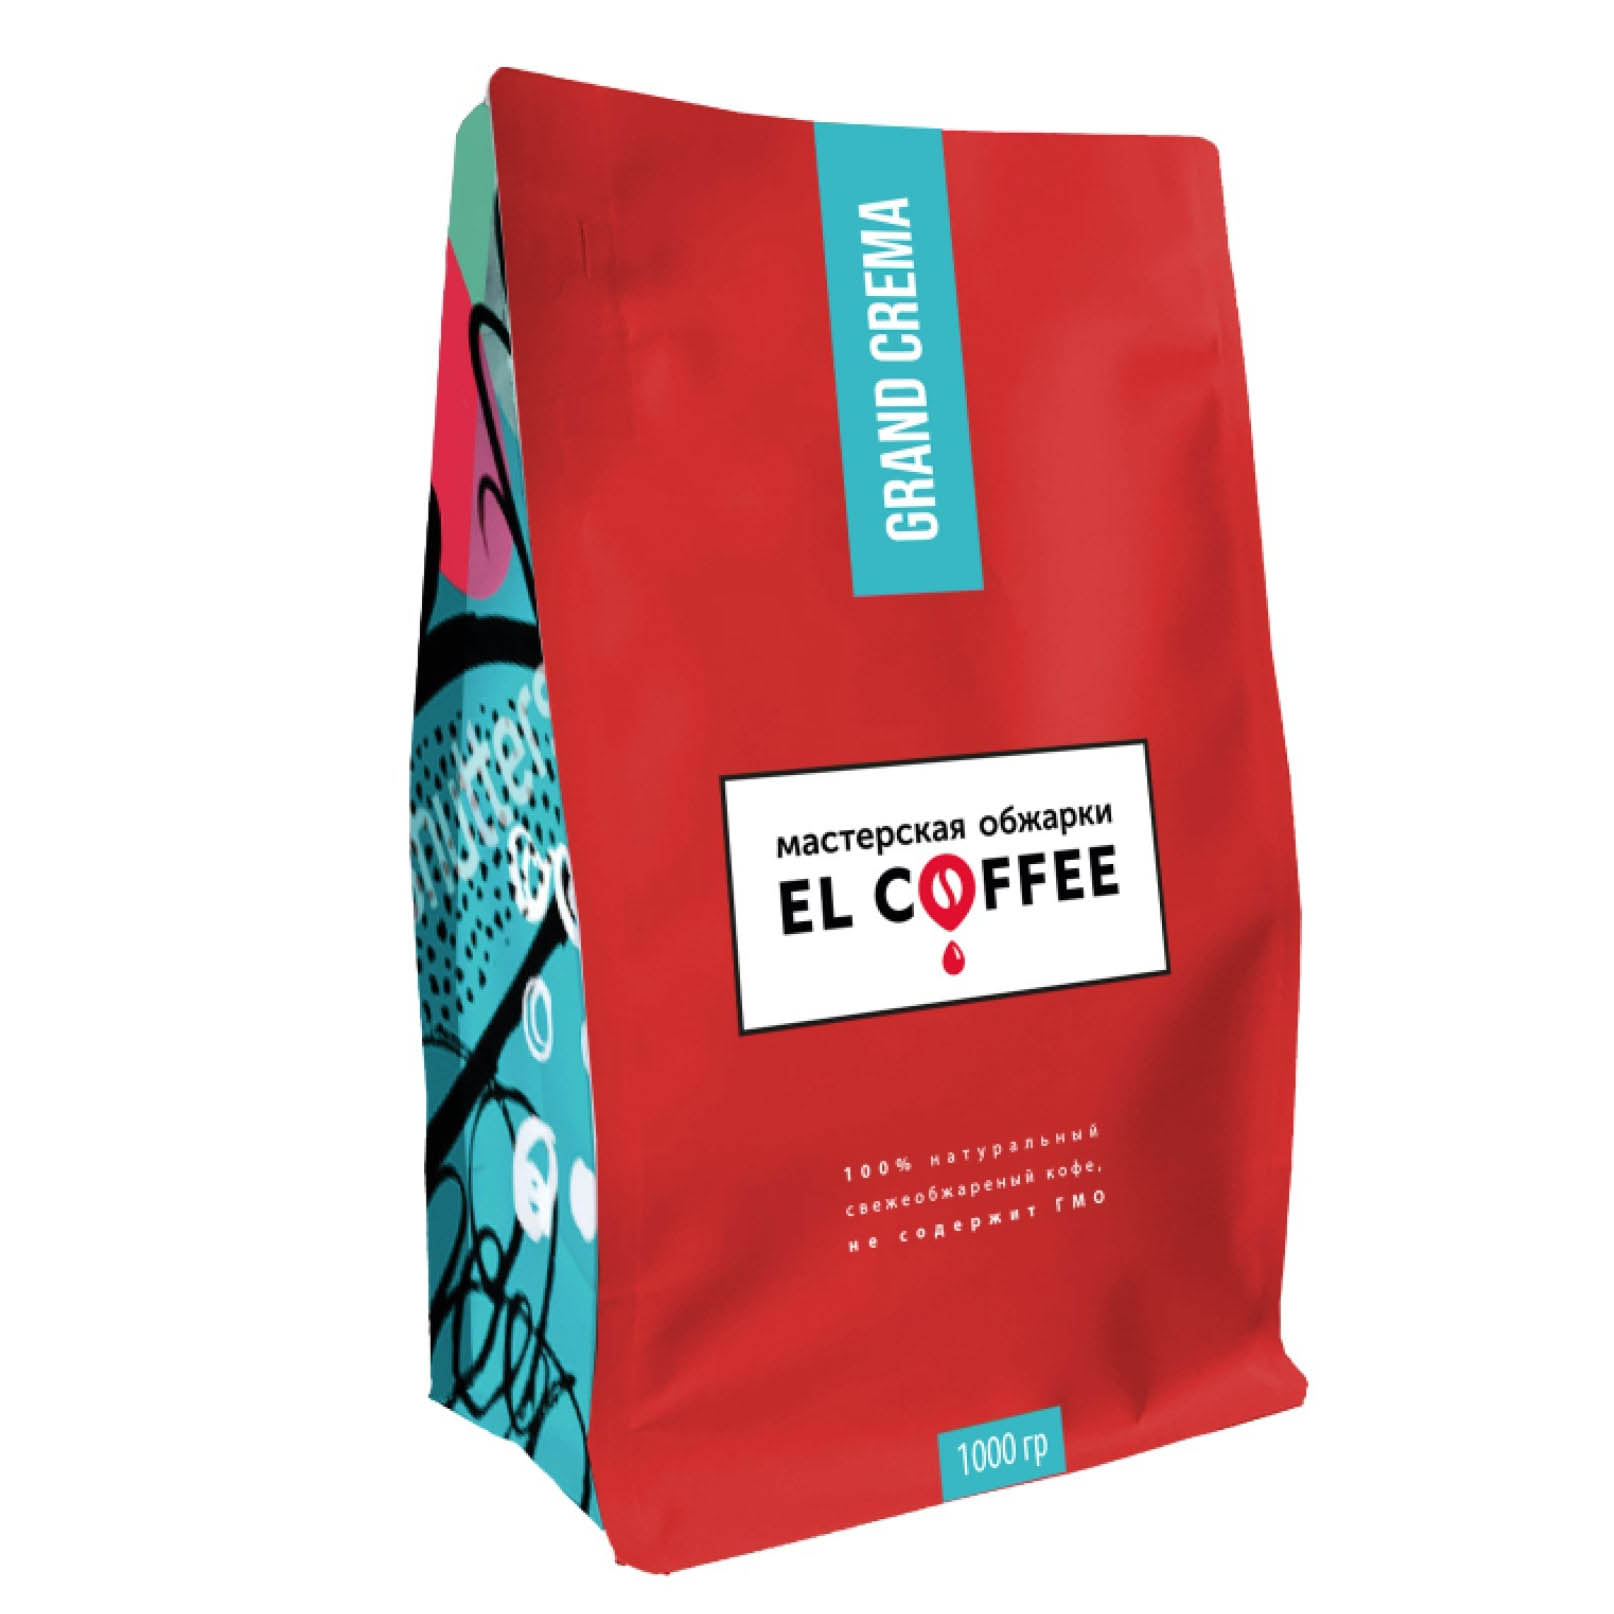 Дизайн упаковки для кофе для компании "El Coffee"